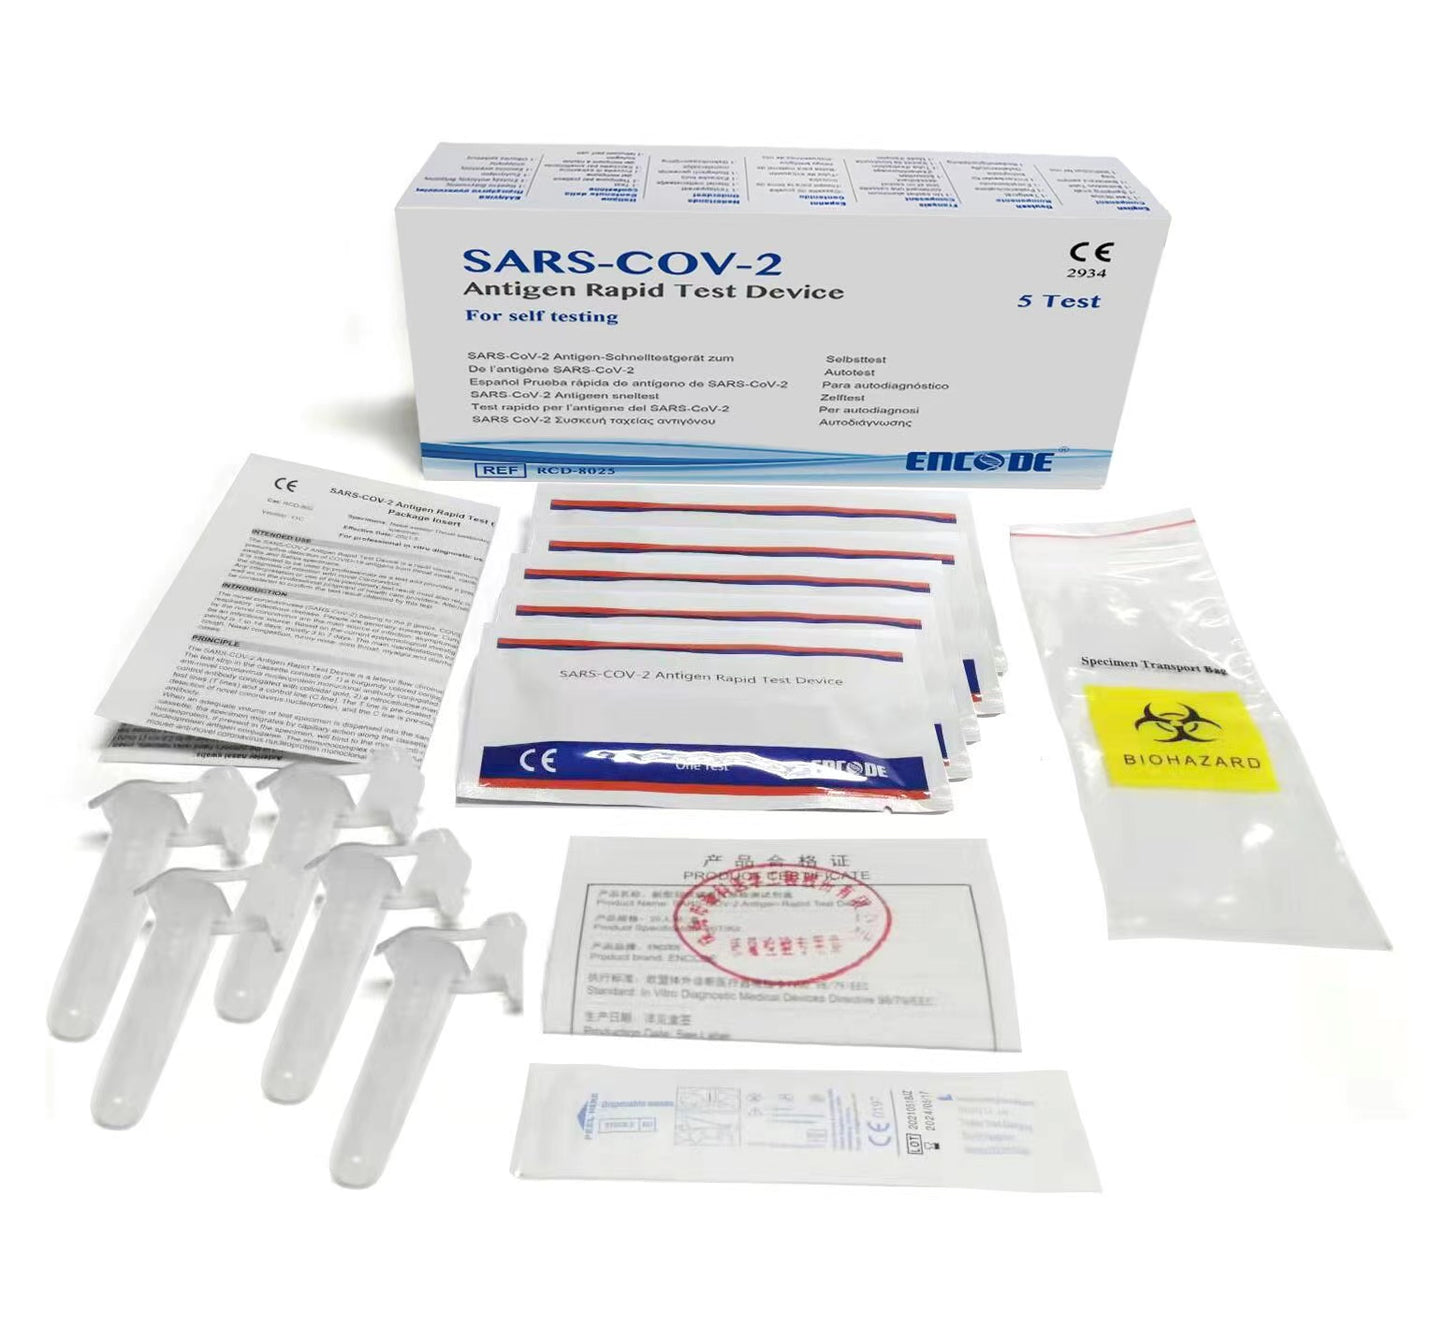 （衛生署認可）Encode SARS-COV-2 Antigen Rapid Test Device 新冠病毒抗原快速測試劑（5支裝）